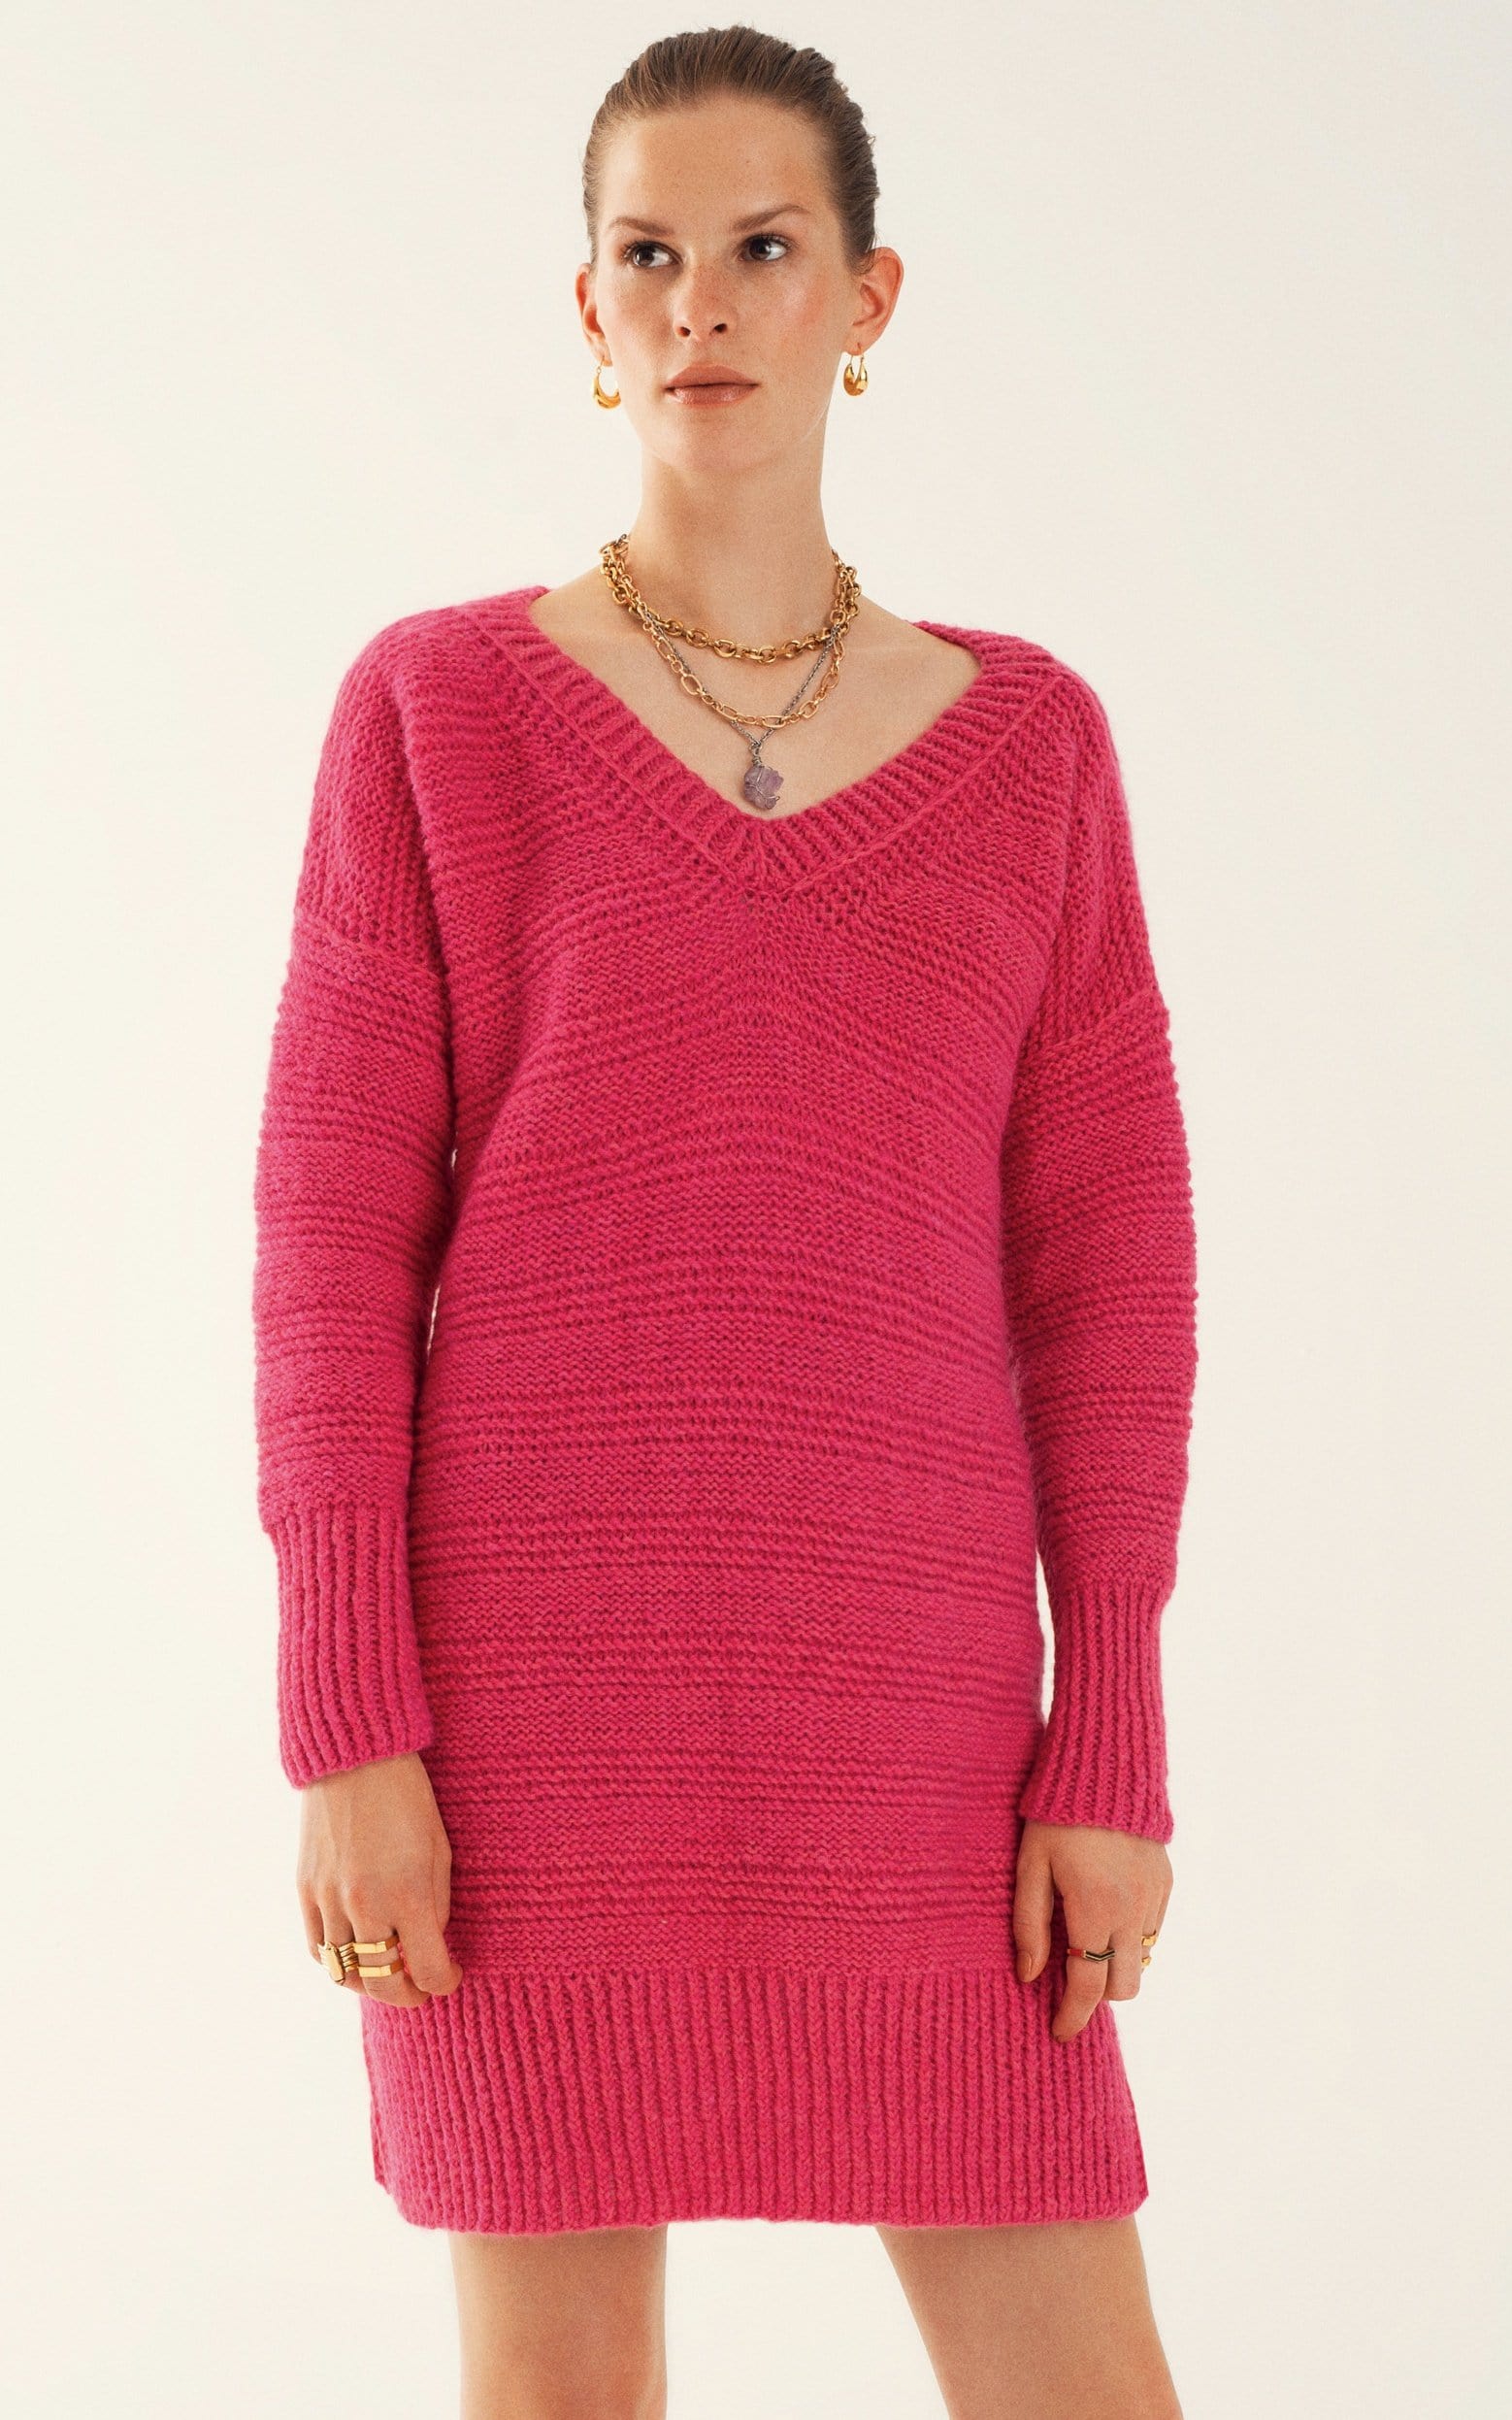 Pulloverkleid mit V-Ausschnitt - Strickset von LANA GROSSA jetzt online kaufen bei OONIQUE